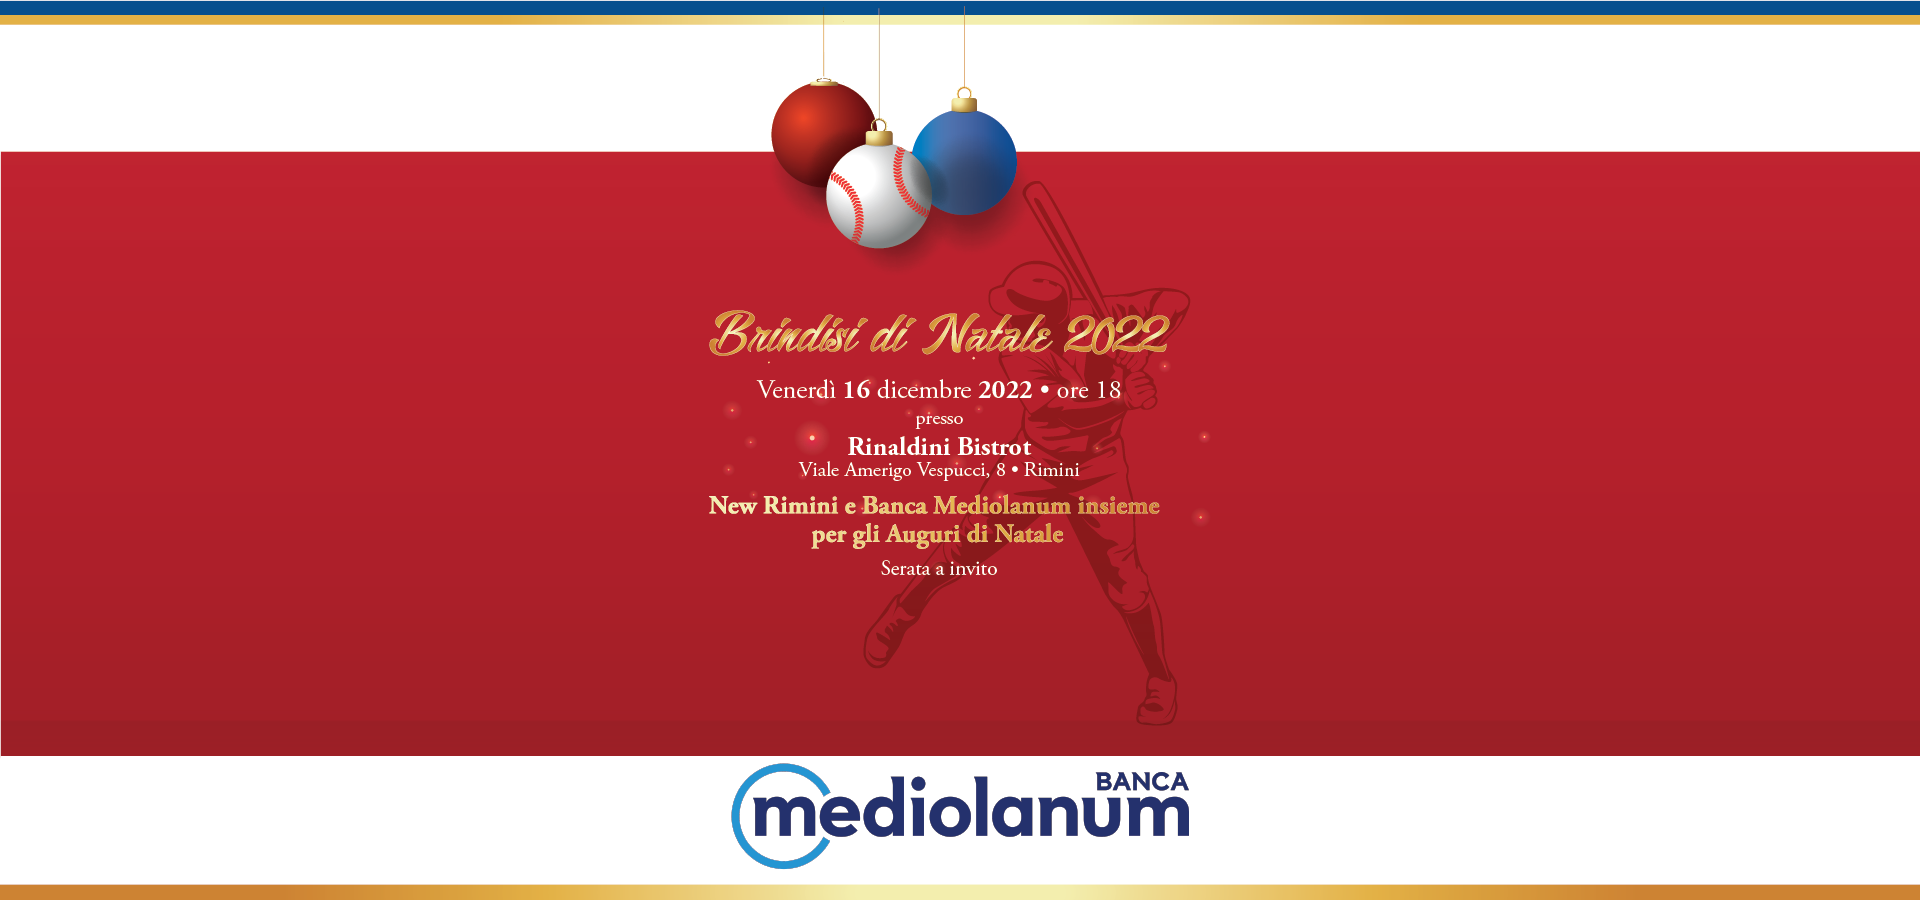 Mediolanum - Serata a Invito - Brindisi di Natale 2022